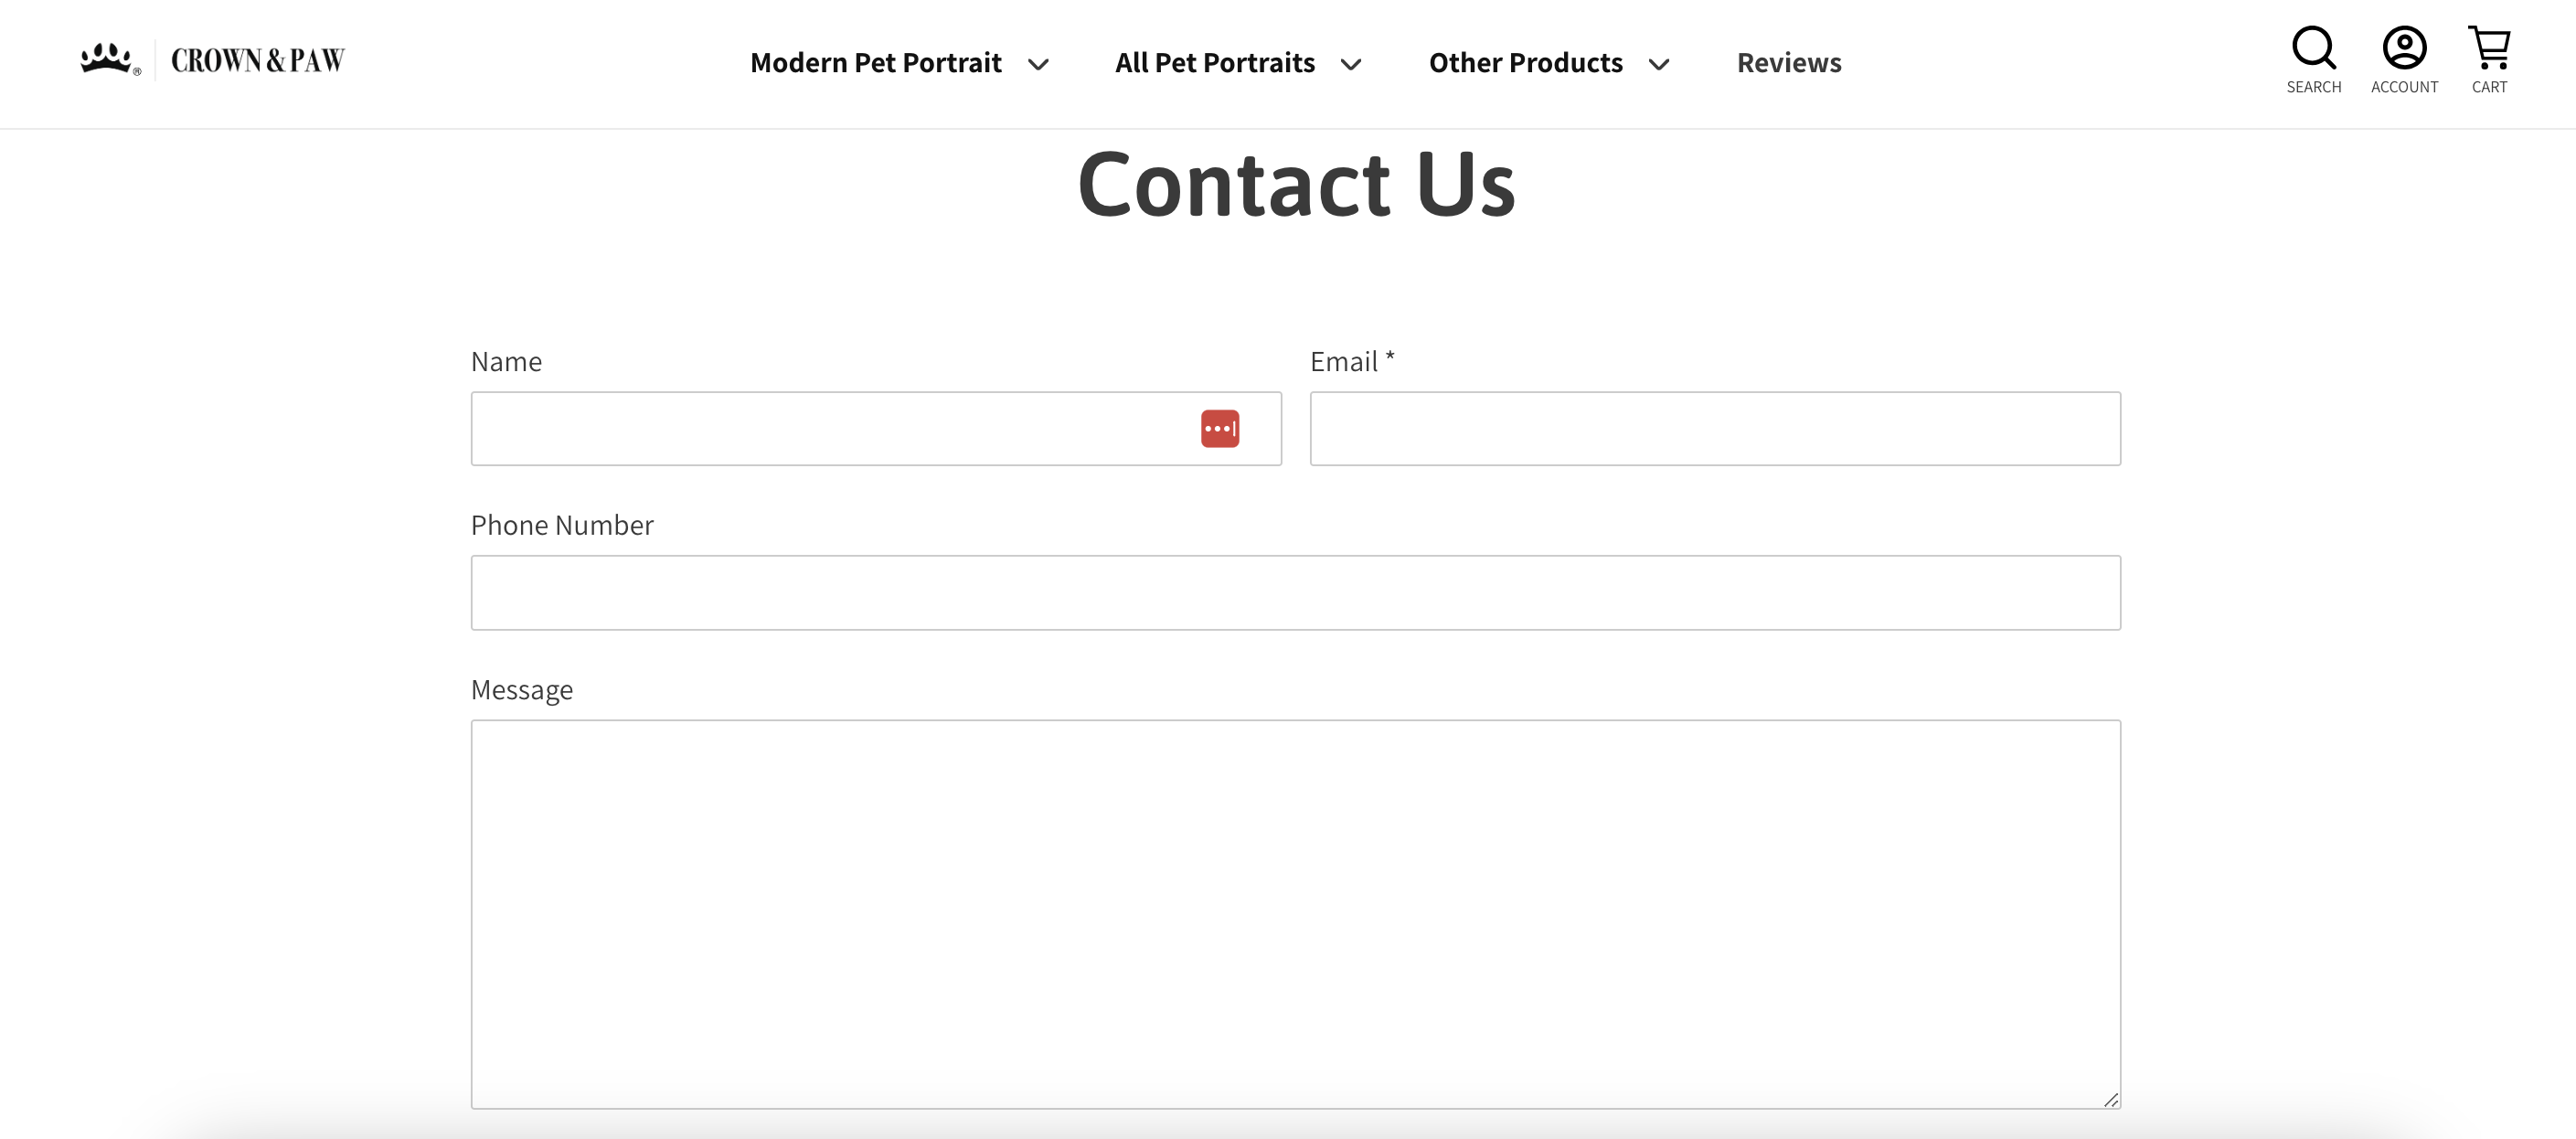 La page de contact de Crown and Paw ne demande que des informations de contact de base, ce qui offre aux visiteurs une expérience simplifiée.